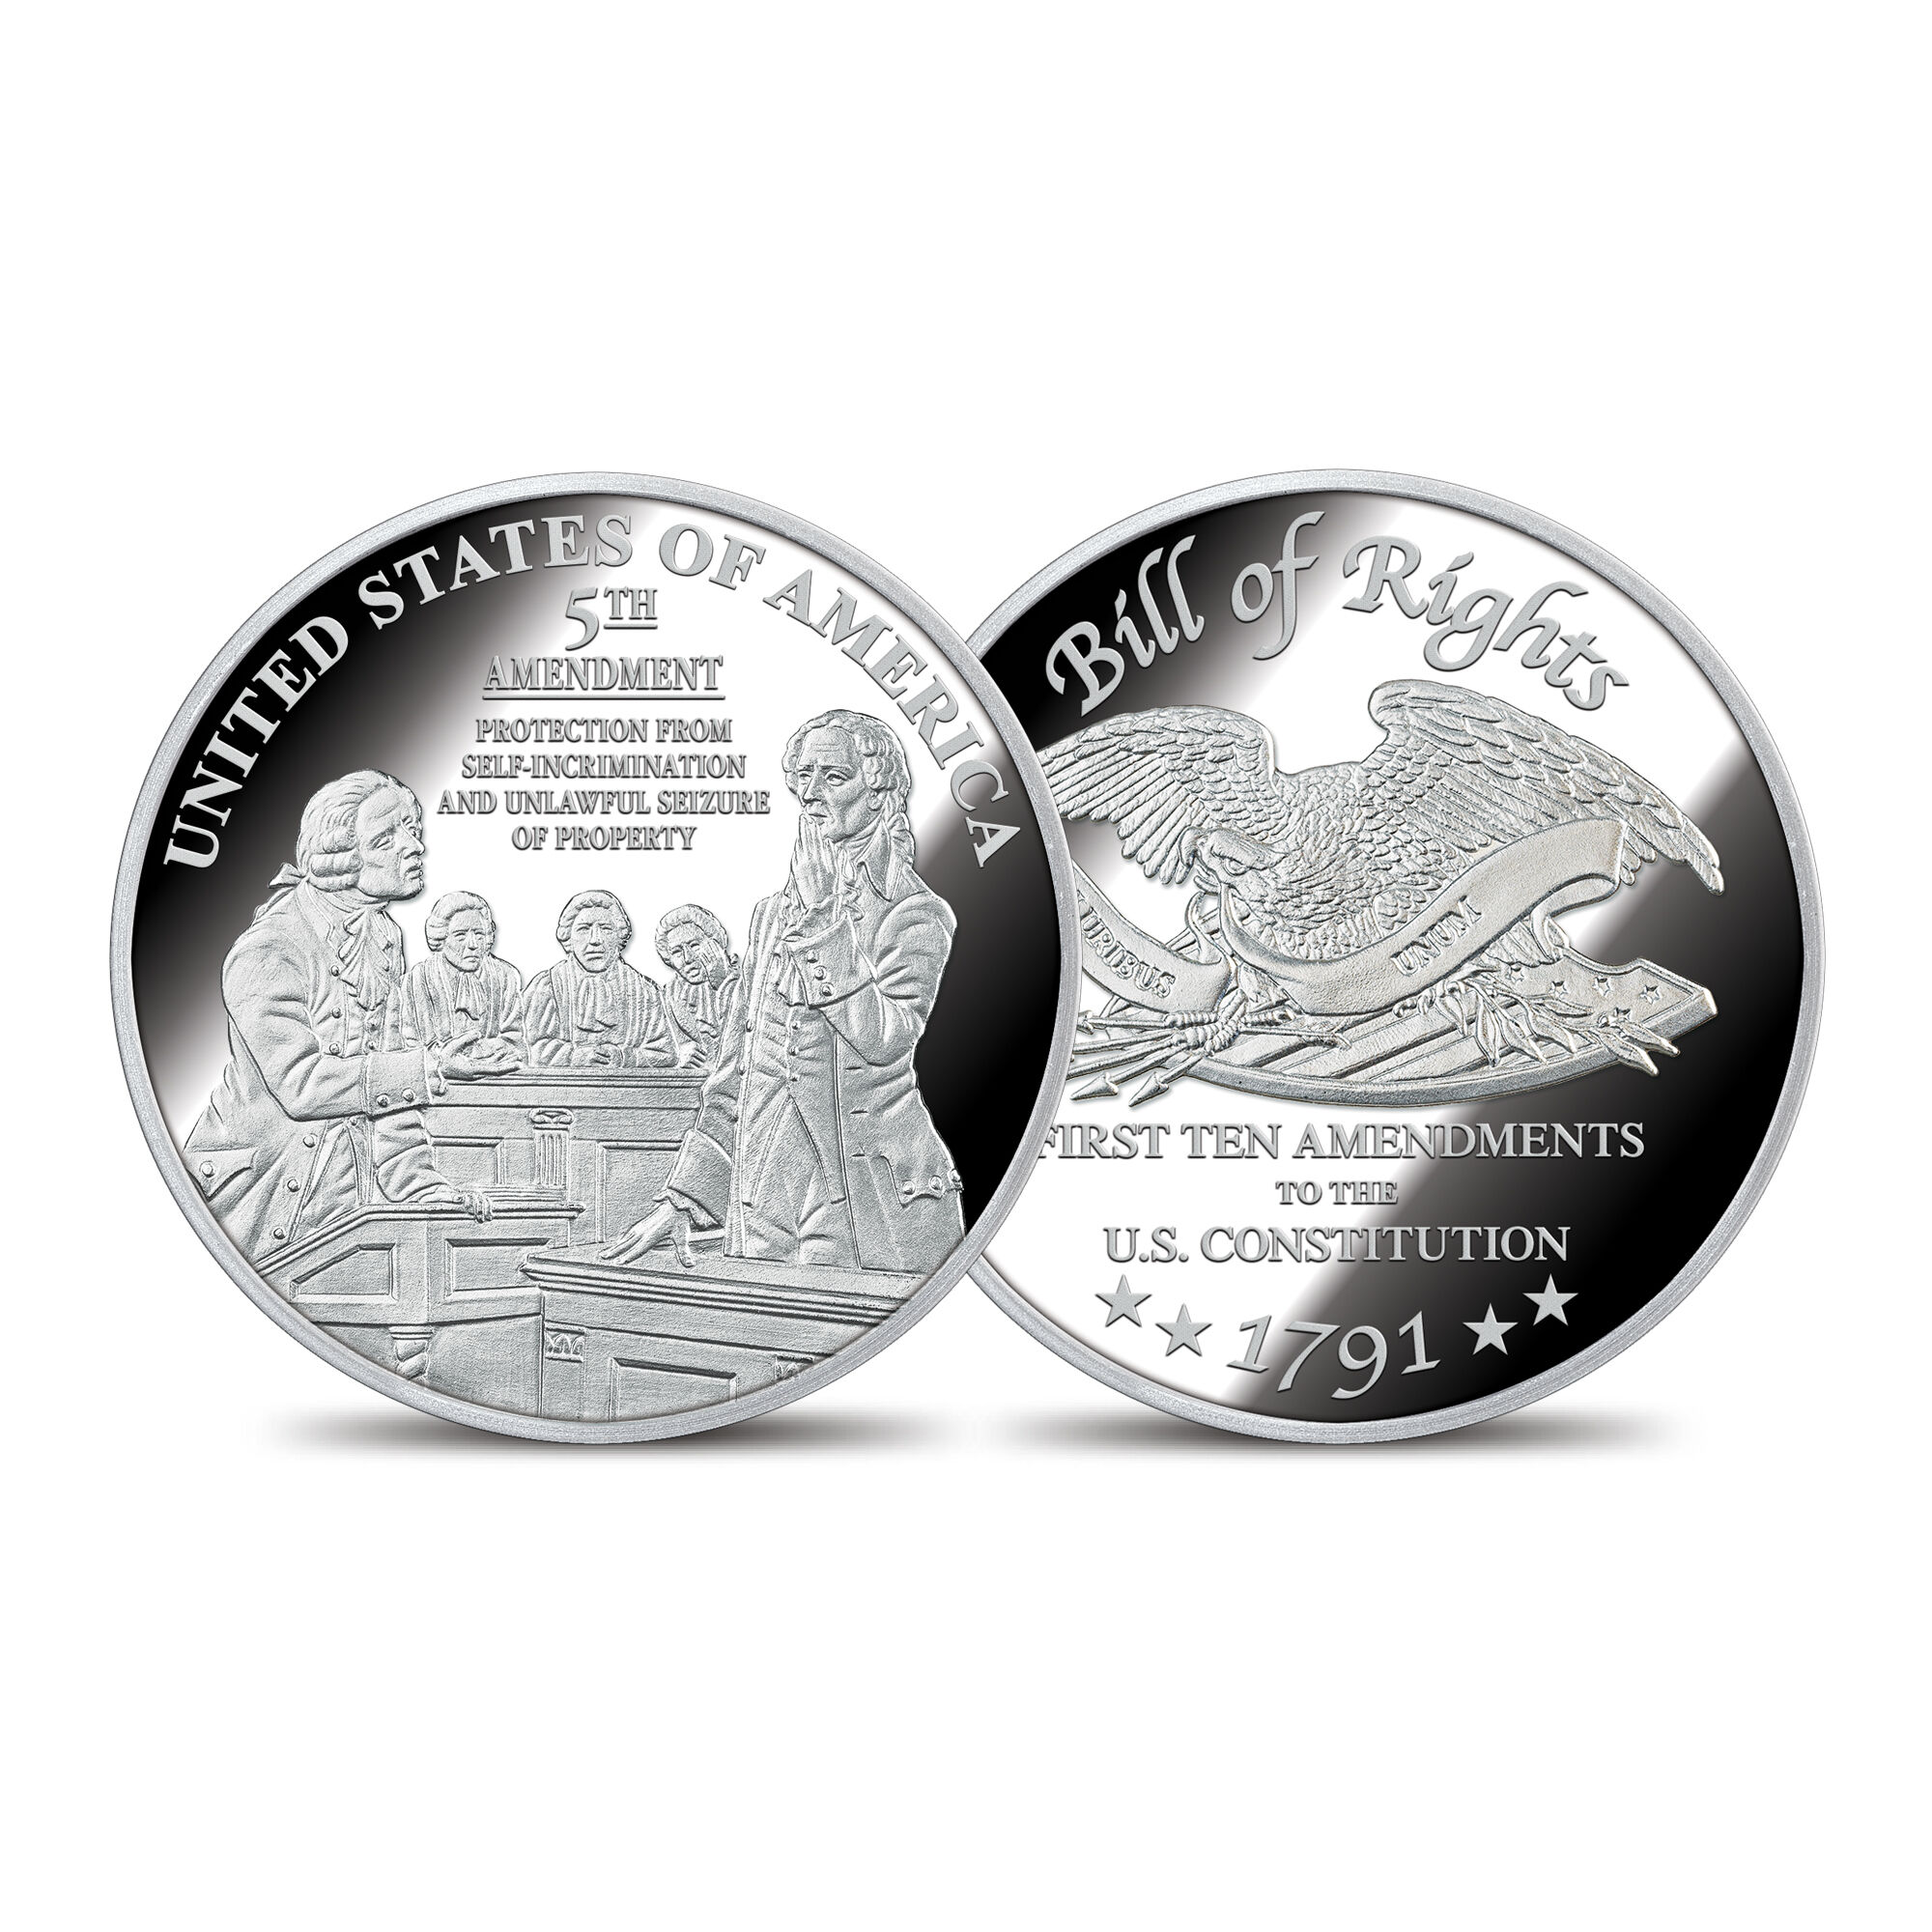 The Bill of Rights Silver Bullion Commemoratives 6530 0030 d commemorative5